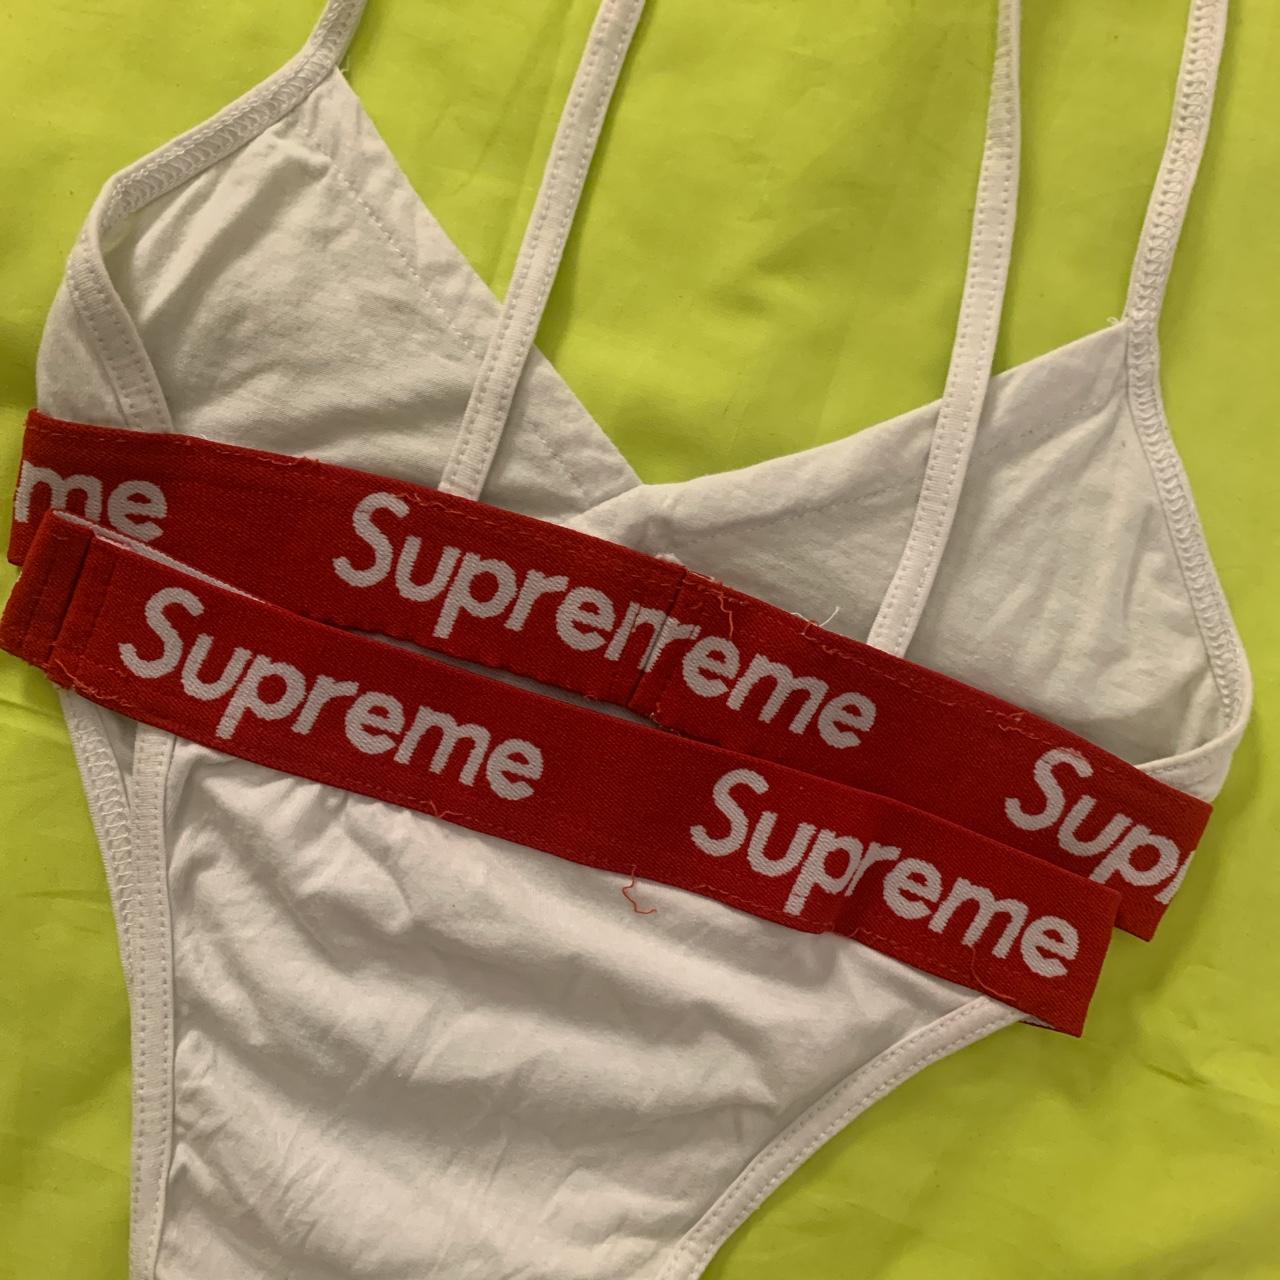 women's supreme underwear never worn size x's - Depop